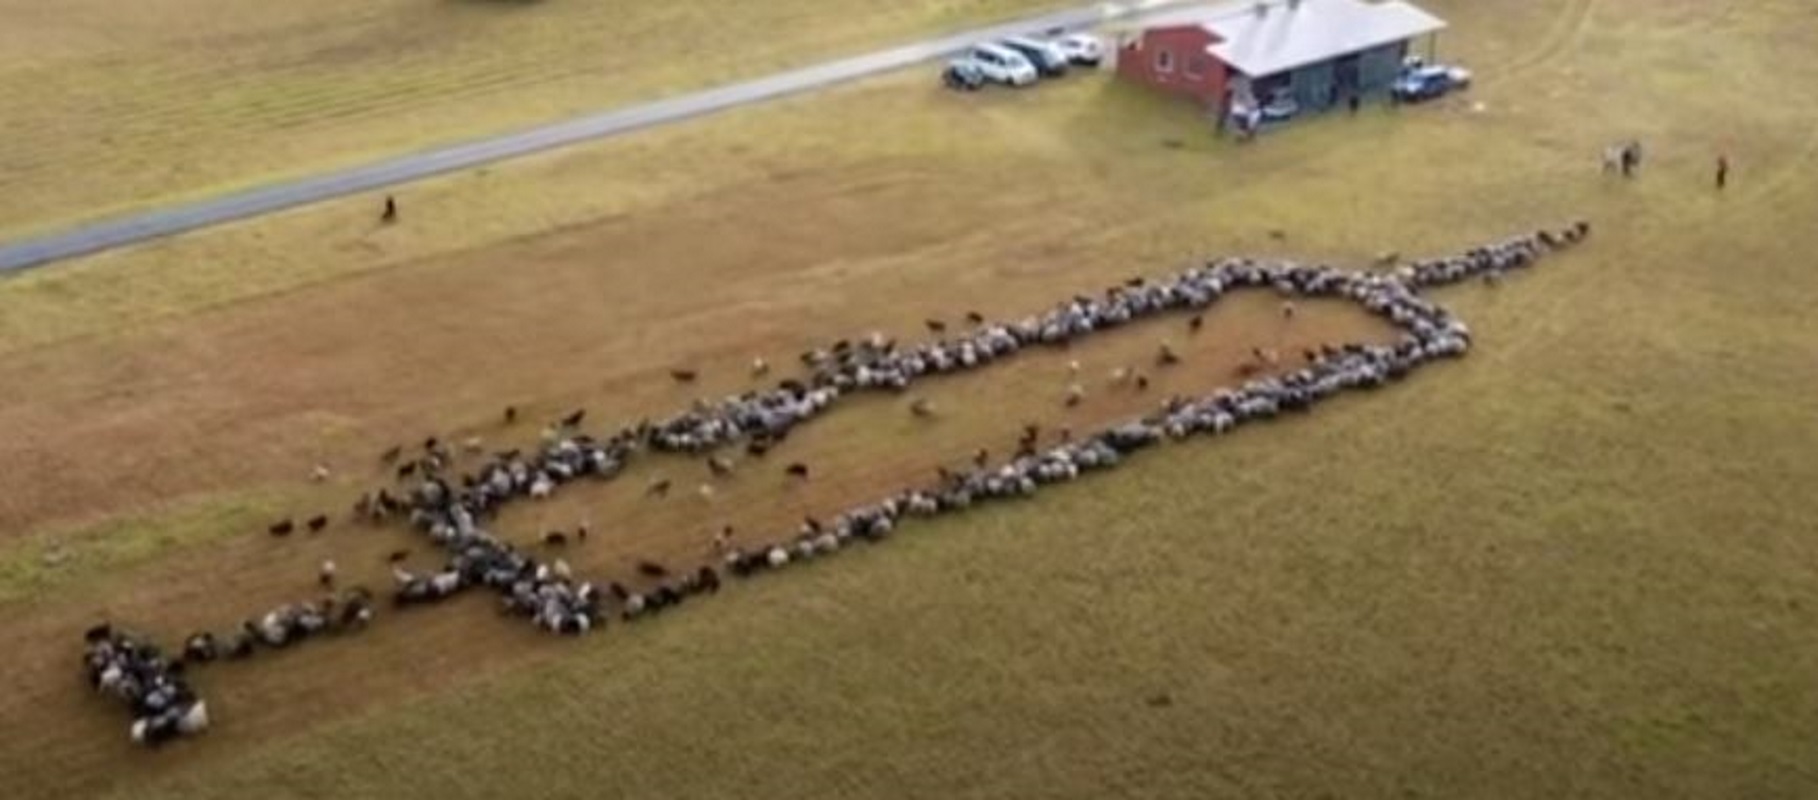 Στην Γερμανία επιστράτευσαν κατσίκες και πρόβατα για την εμβολιαστική καμπάνια κατά του κορονοϊου